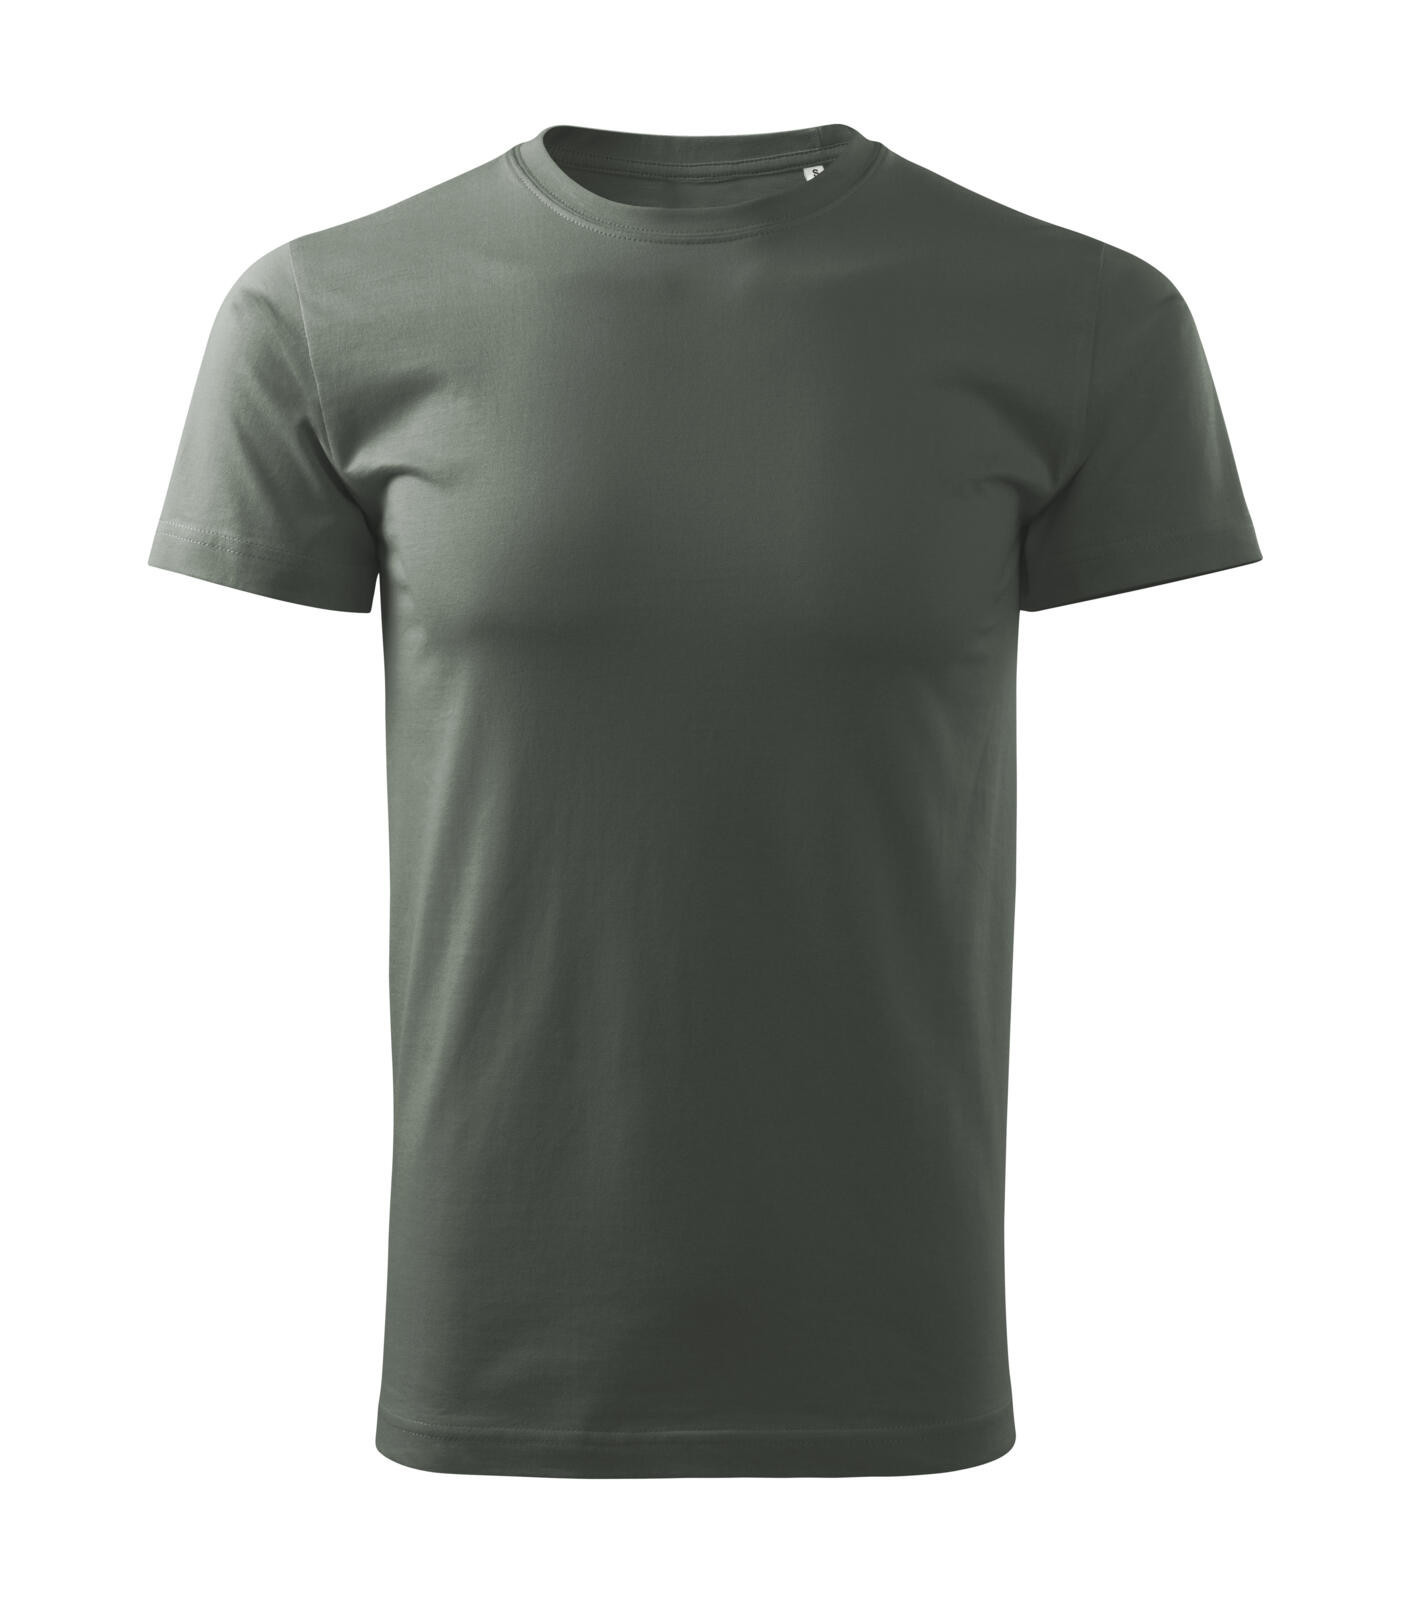 Pánske tričko Malfini Basic Free F29 - veľkosť: S, farba: tmavá bridlica